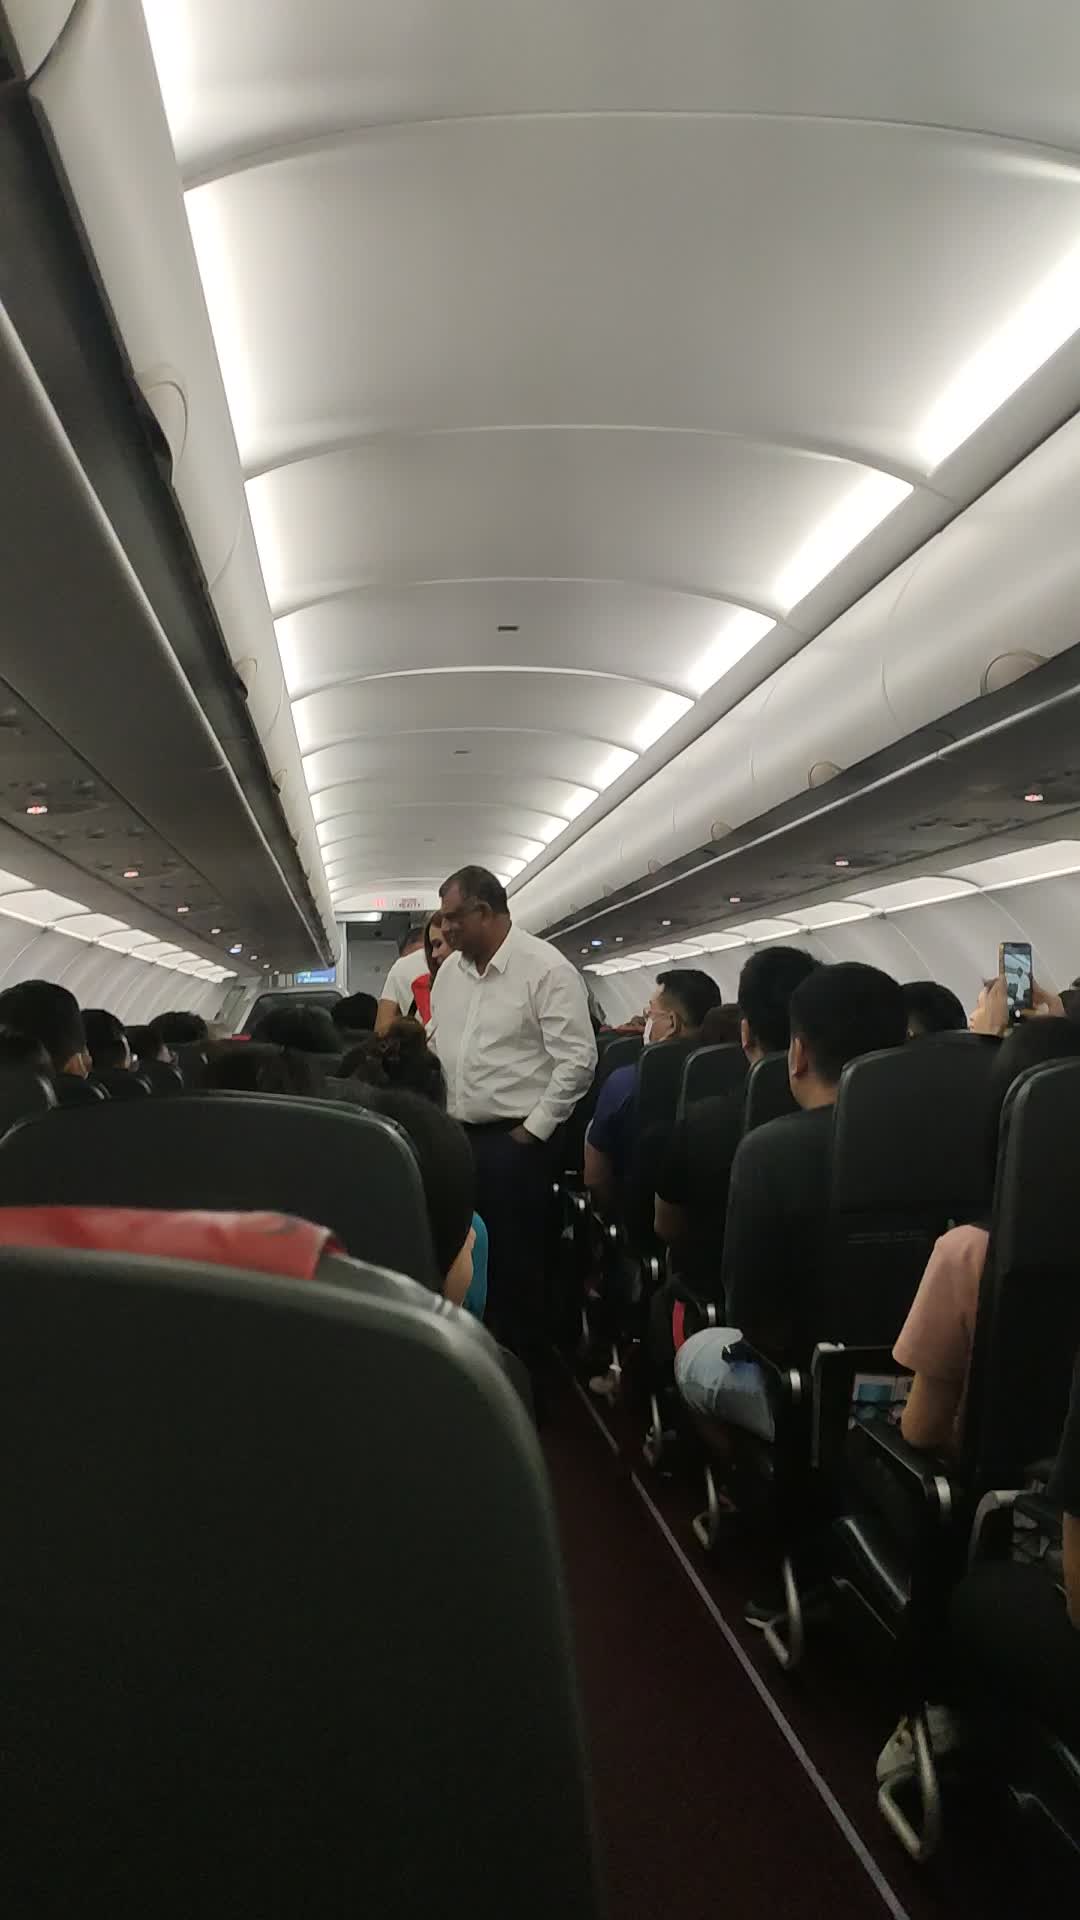 托尼·费尔南德斯被发现在他的新空中客车A321上与他的年轻飞行员和空姐一起前往吉隆坡